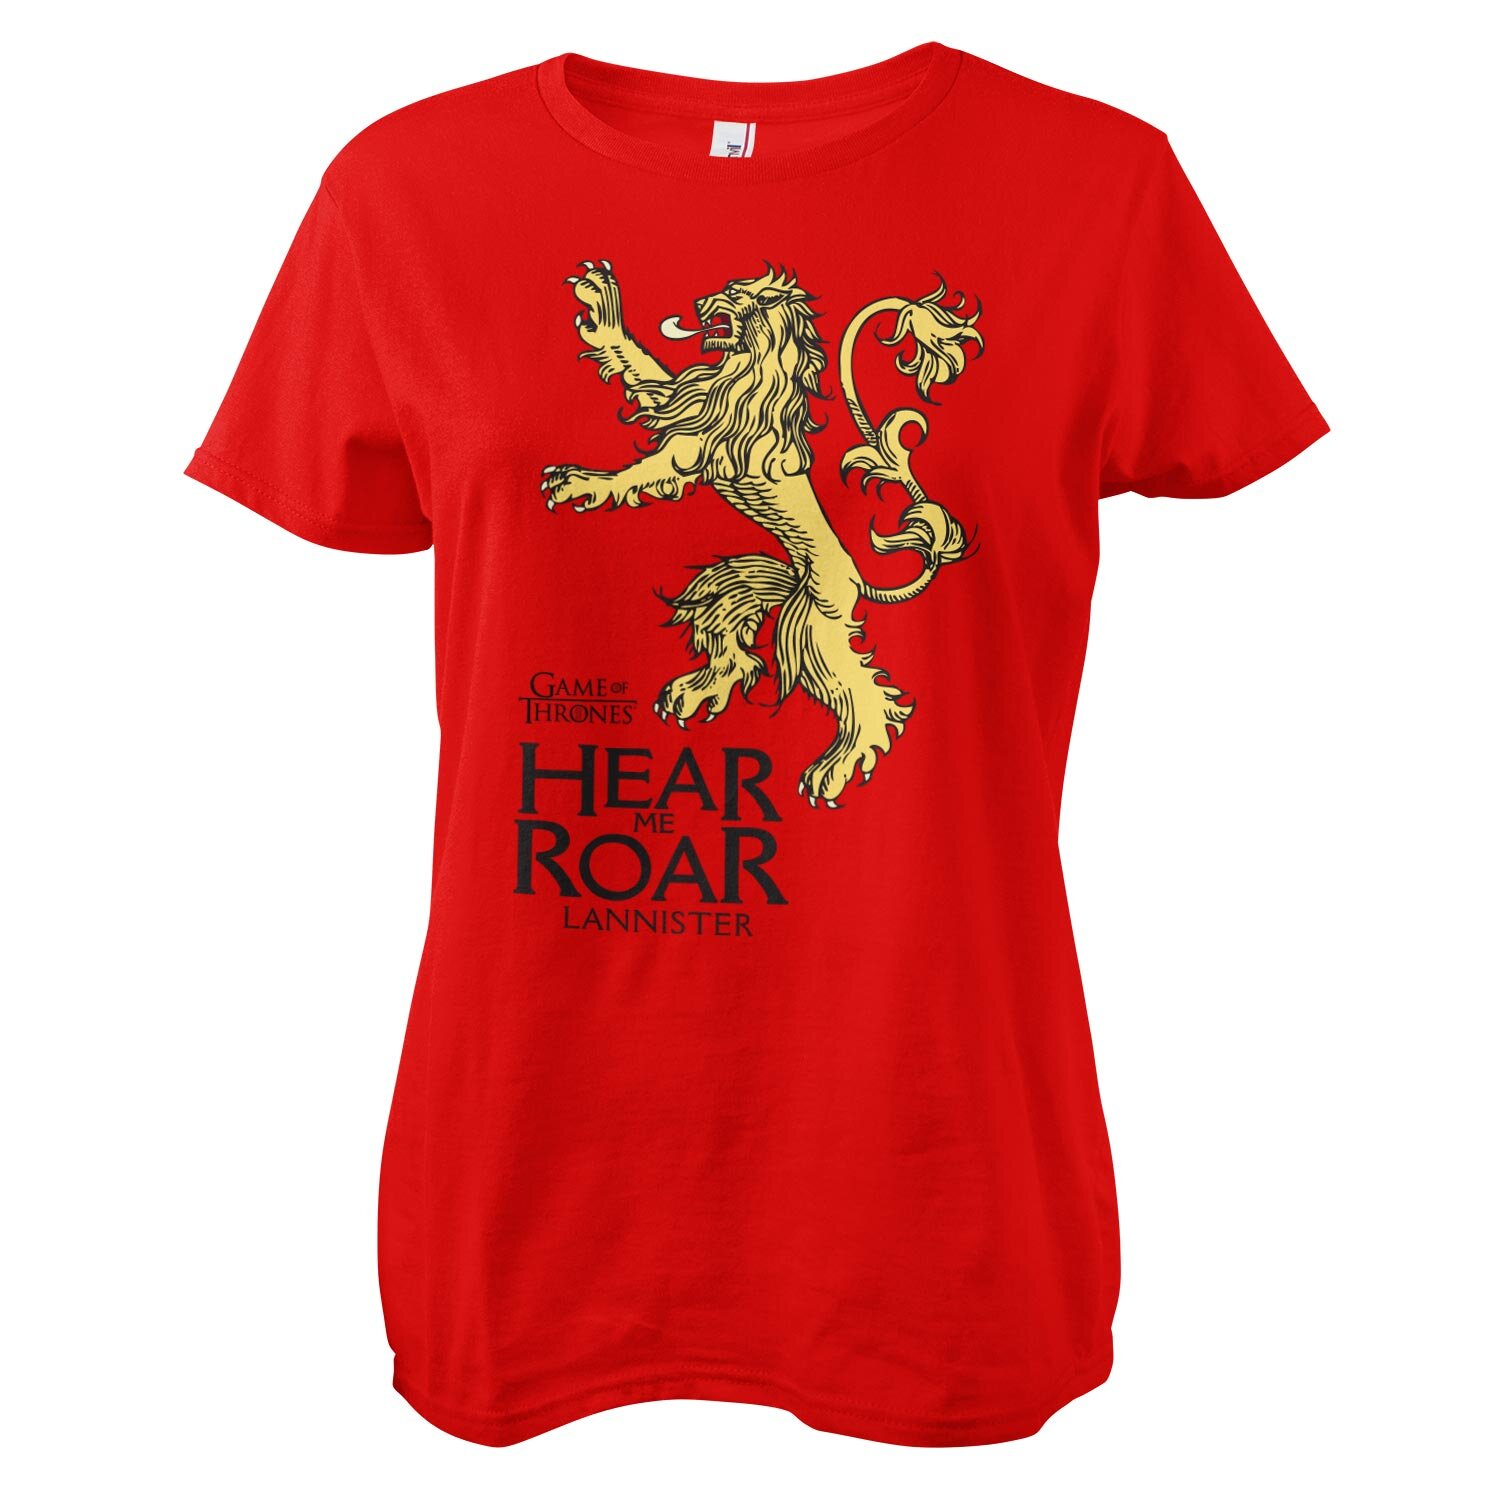 Lannister - Hear Me Roar Girly Tee